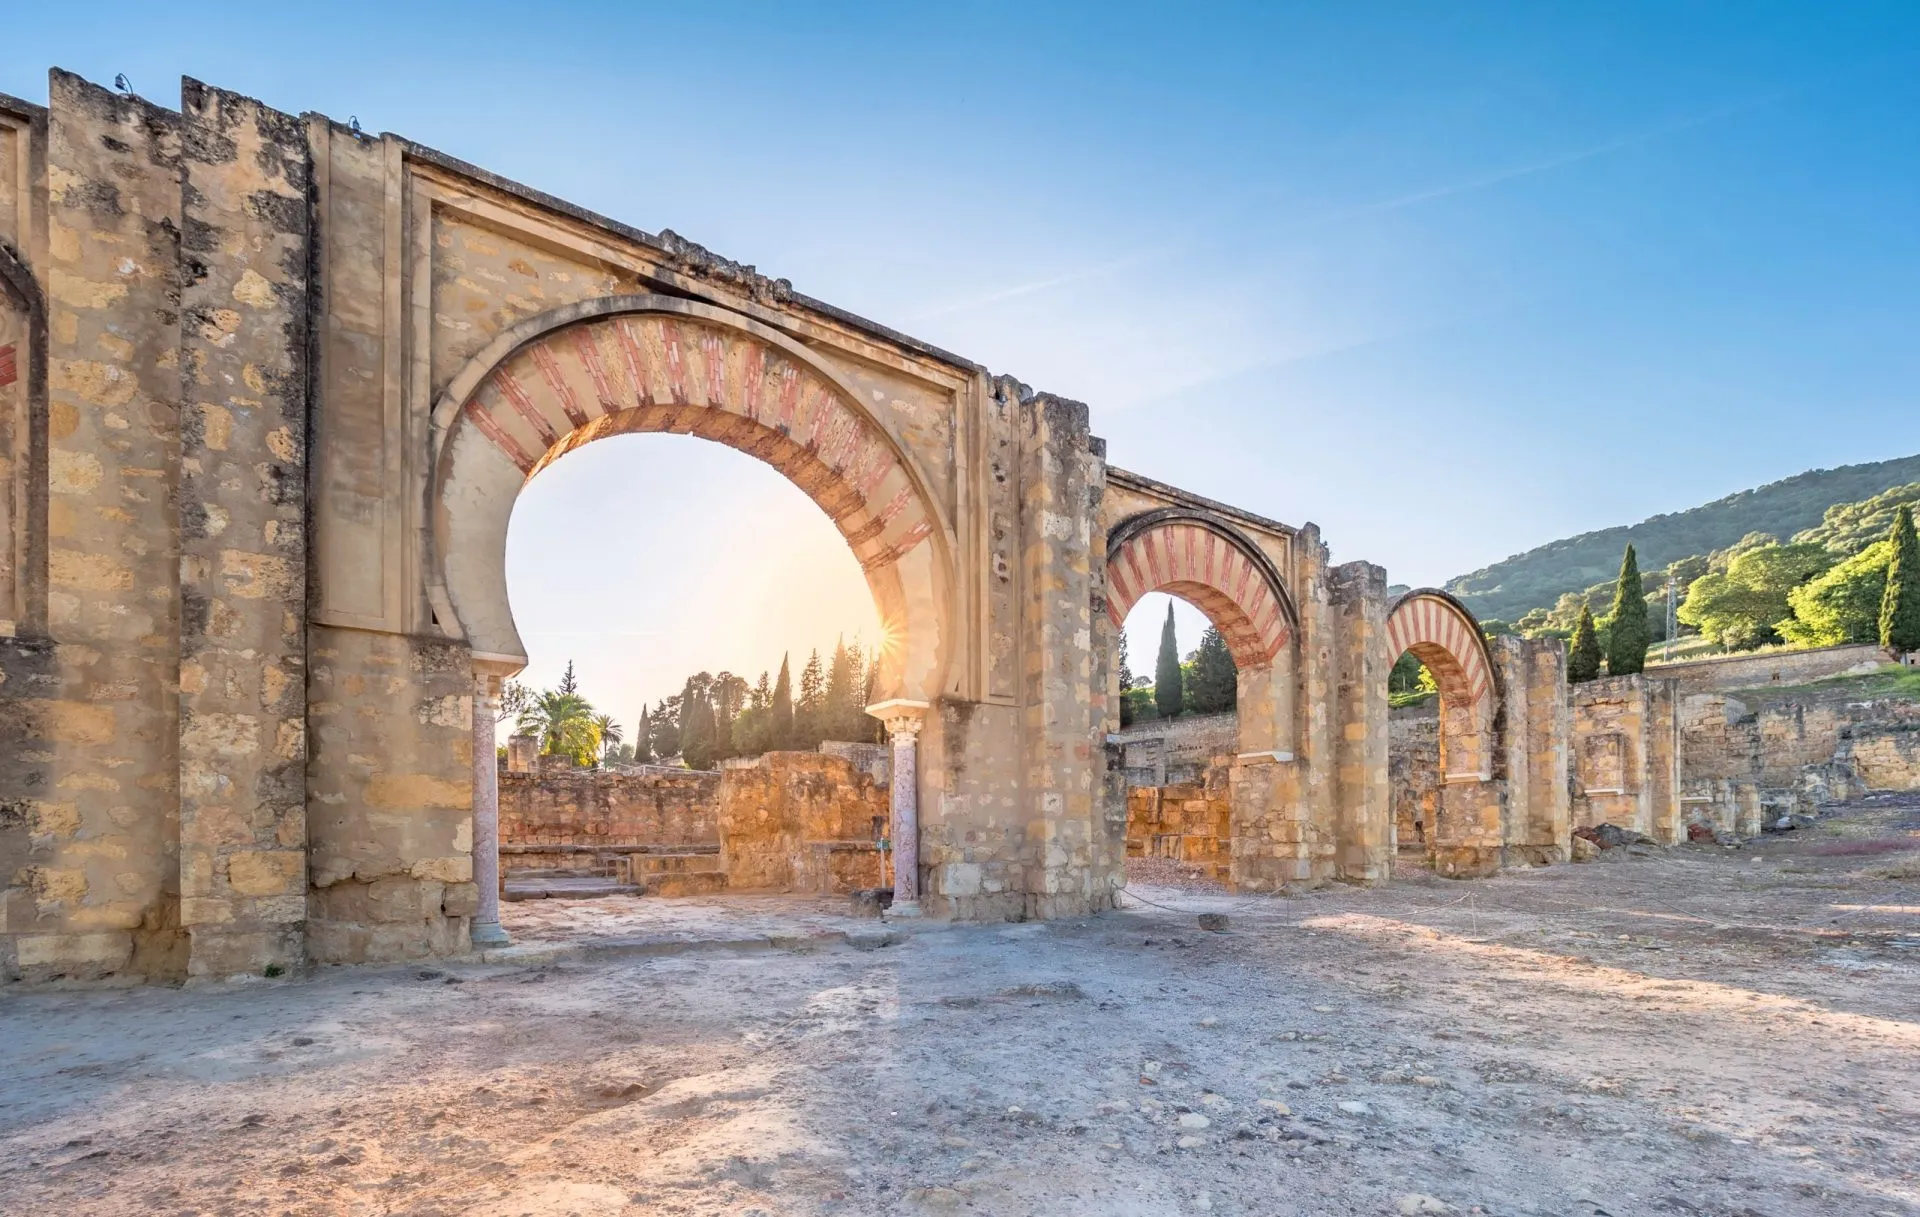 Particolare di un arco arabo nelle rovine della Medina Azahara di Cordova, in Spagna, al tramonto.